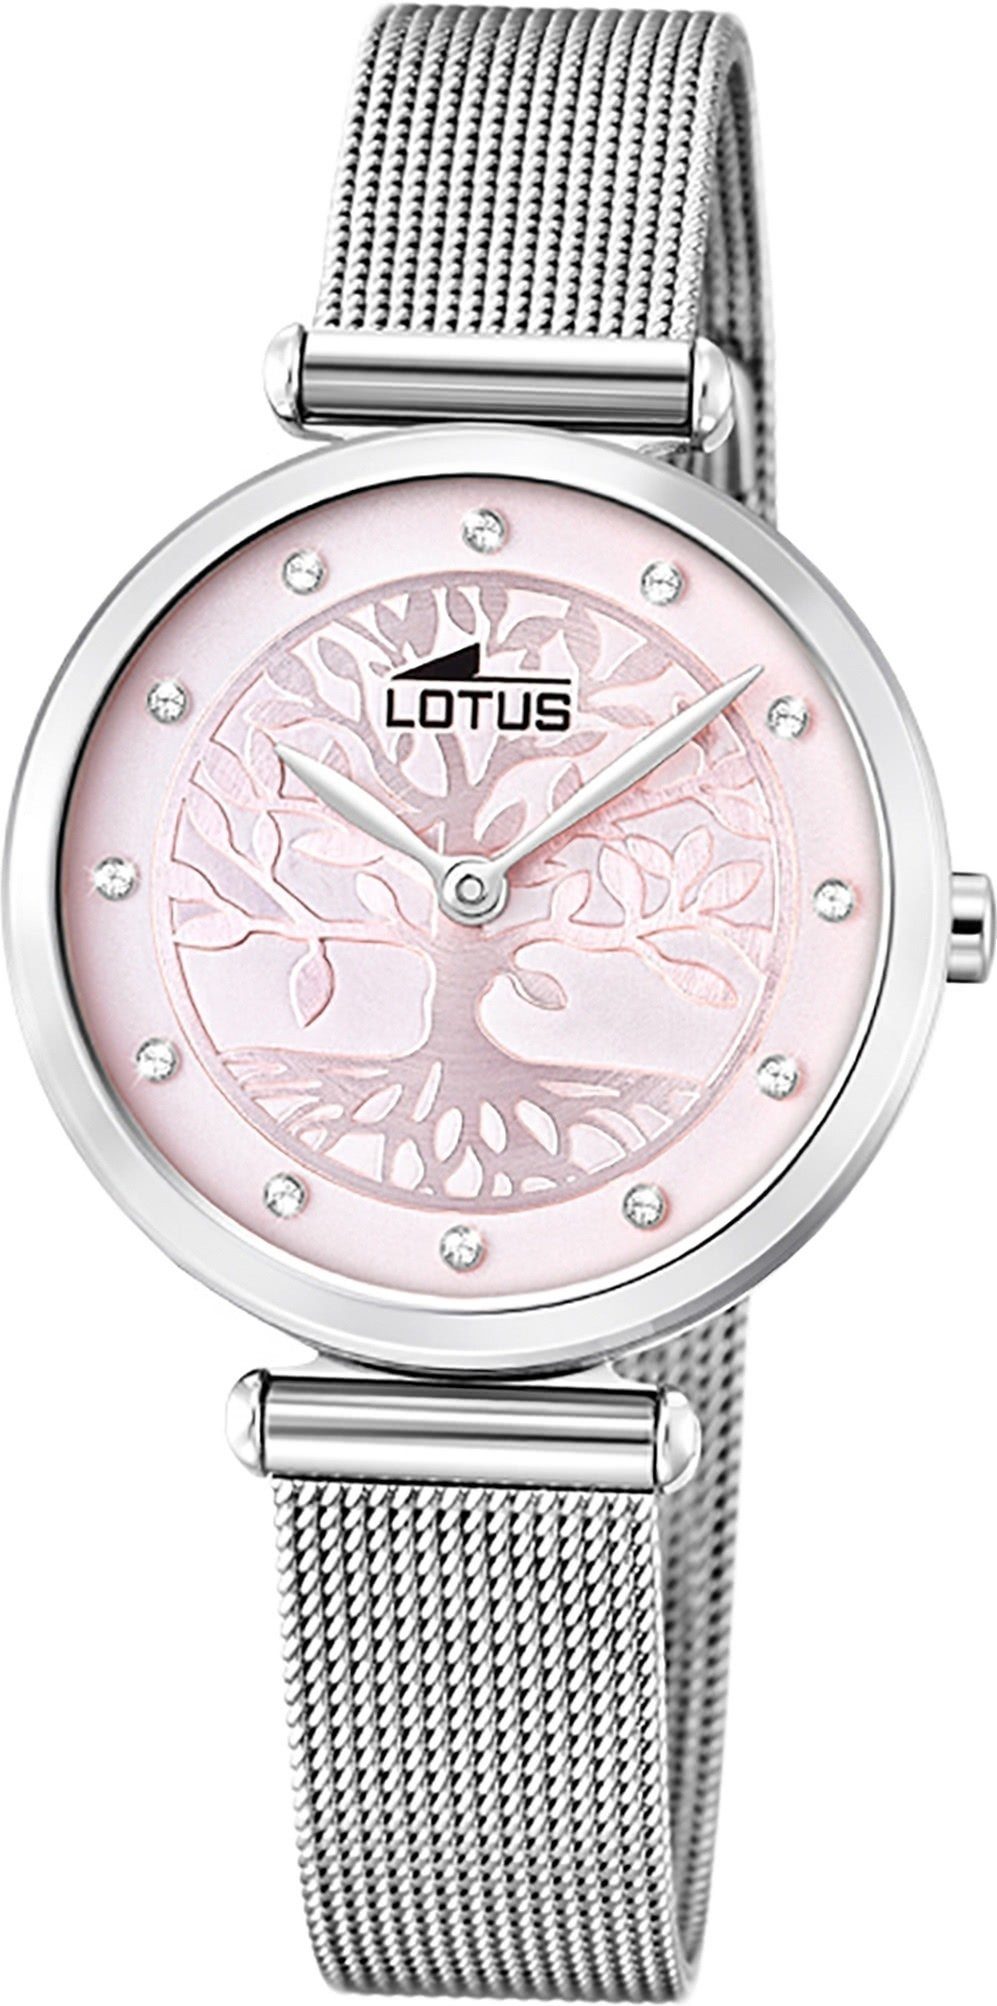 Lotus Quarzuhr LOTUS Edelstahl Damen Uhr 18708/2, Damenuhr mit Edelstahlarmband, rundes Gehäuse, klein (ca. 29mm), Fashi